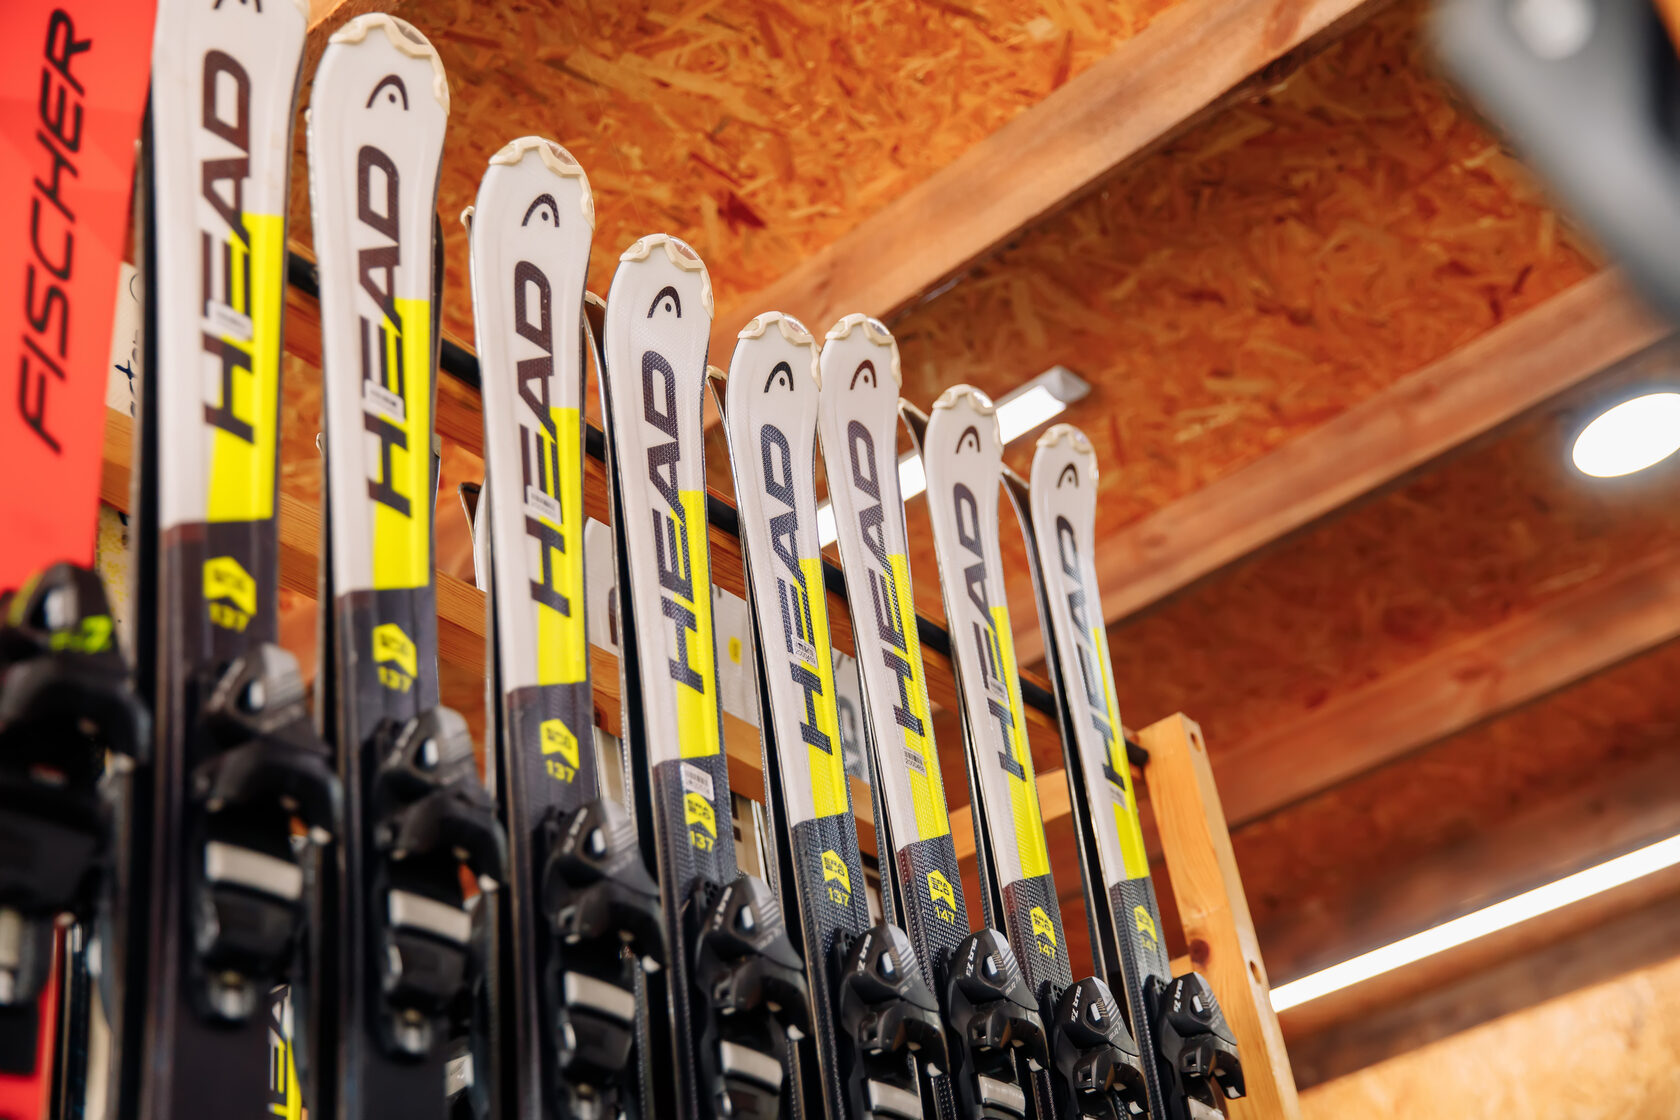 Прокат лыж. Лыжи напрокат. Прокат горнолыжного и сноубордического инвентаря. Технология проката горнолыжного инвентаря. Взять лыжи в прокат